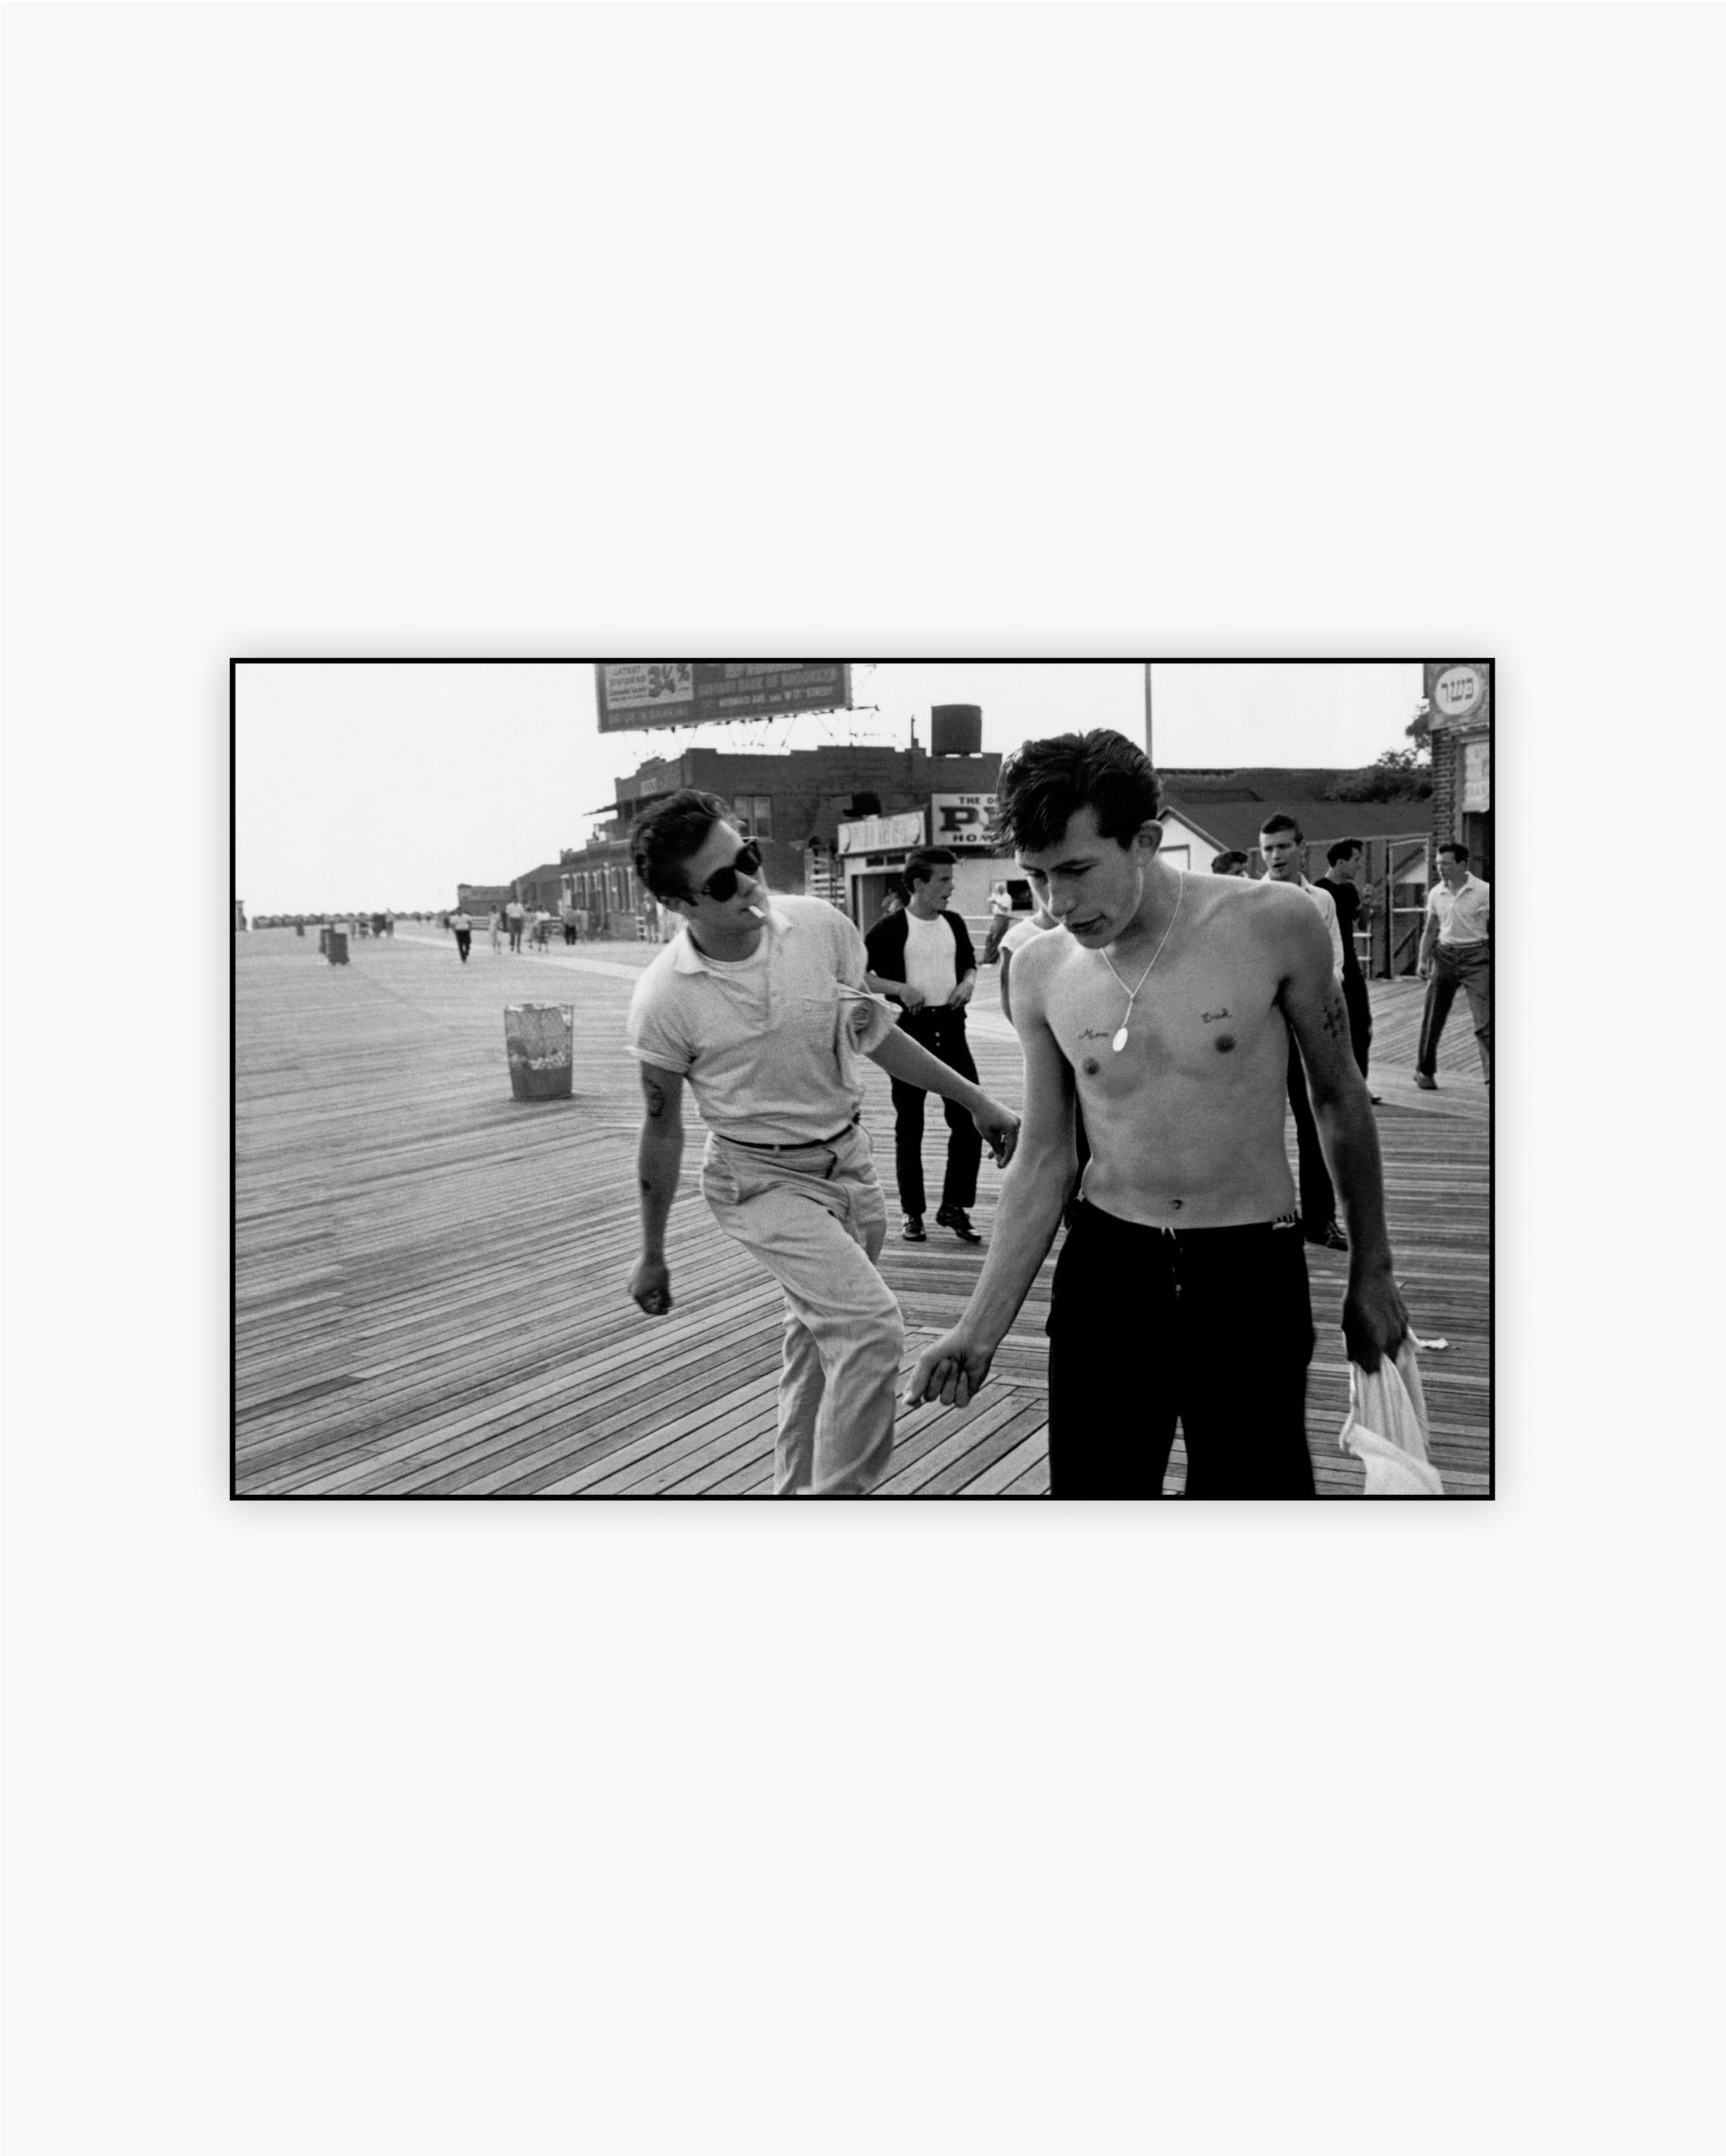 Brooklyn Gang. Coney Island, New York, USA, 1959